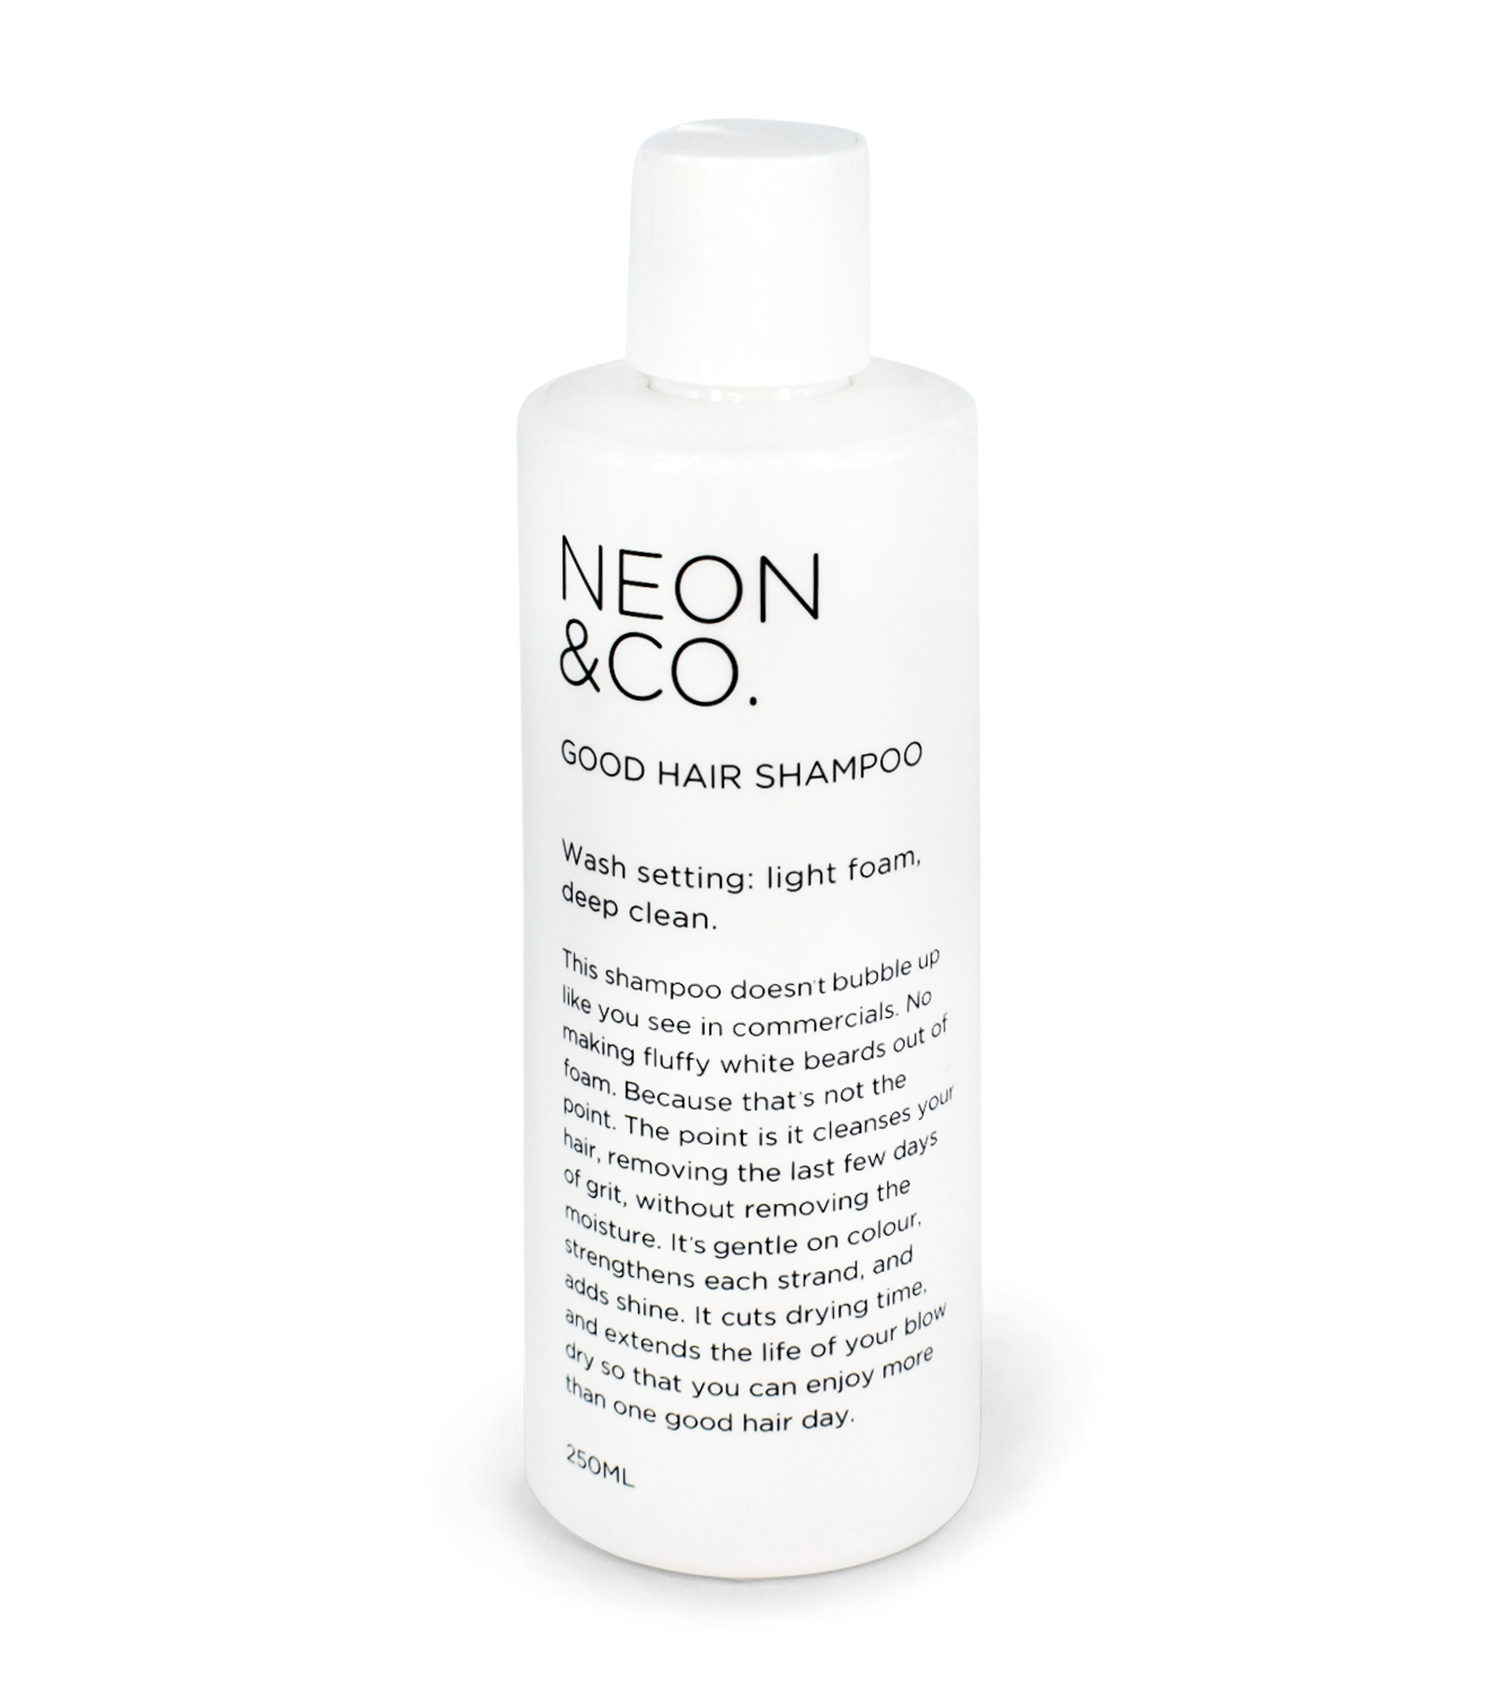 Neon & Co. Good Hair Shampoo